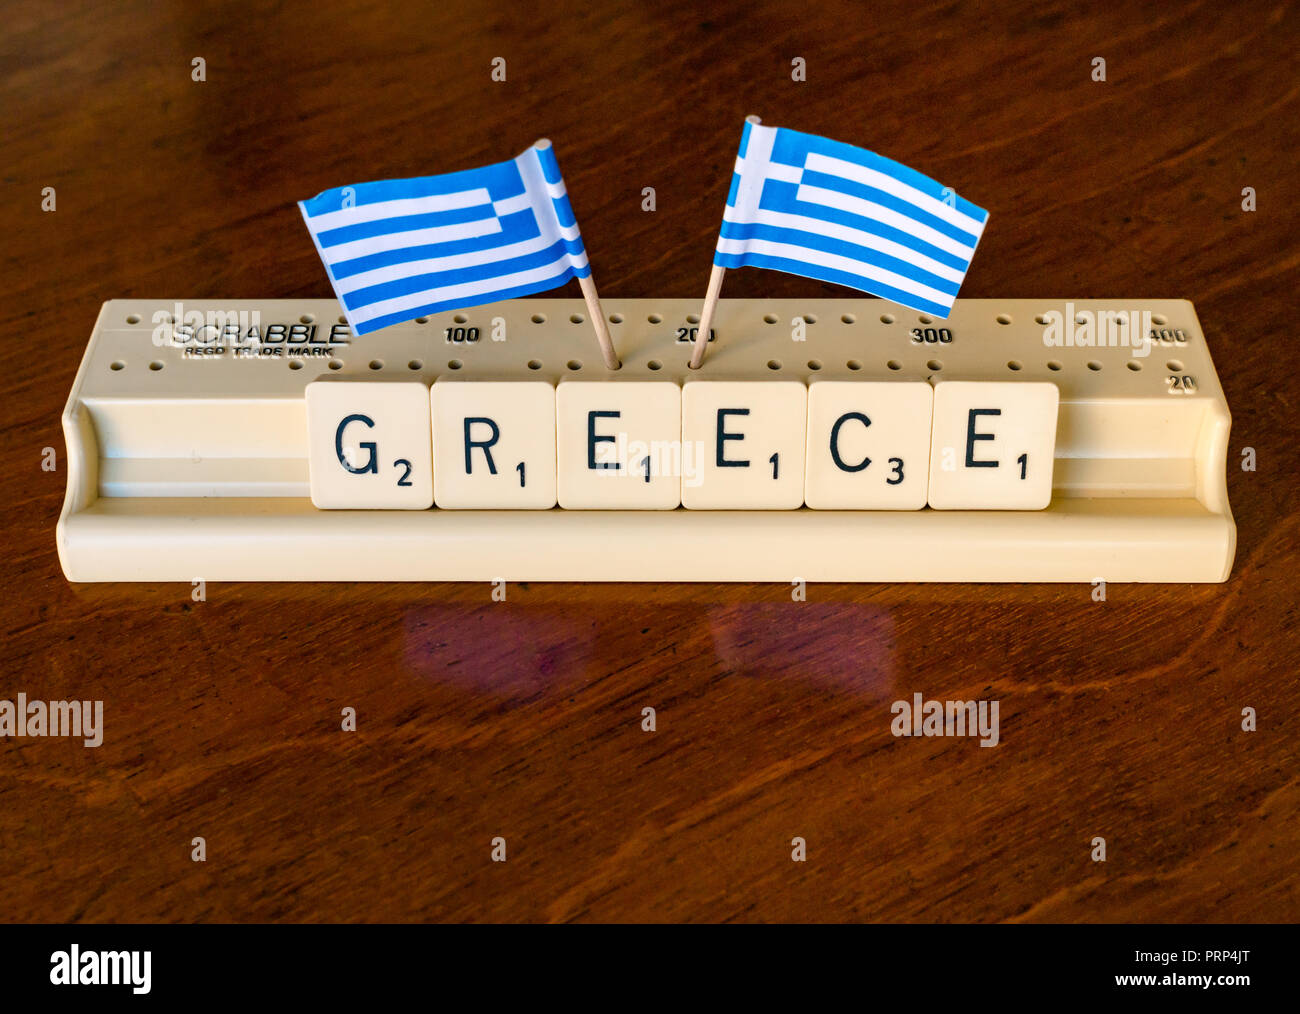 Scrabble letras de Grecia en el Scrabble bandeja con banderas griegas sobre fondo de caoba oscuro Foto de stock